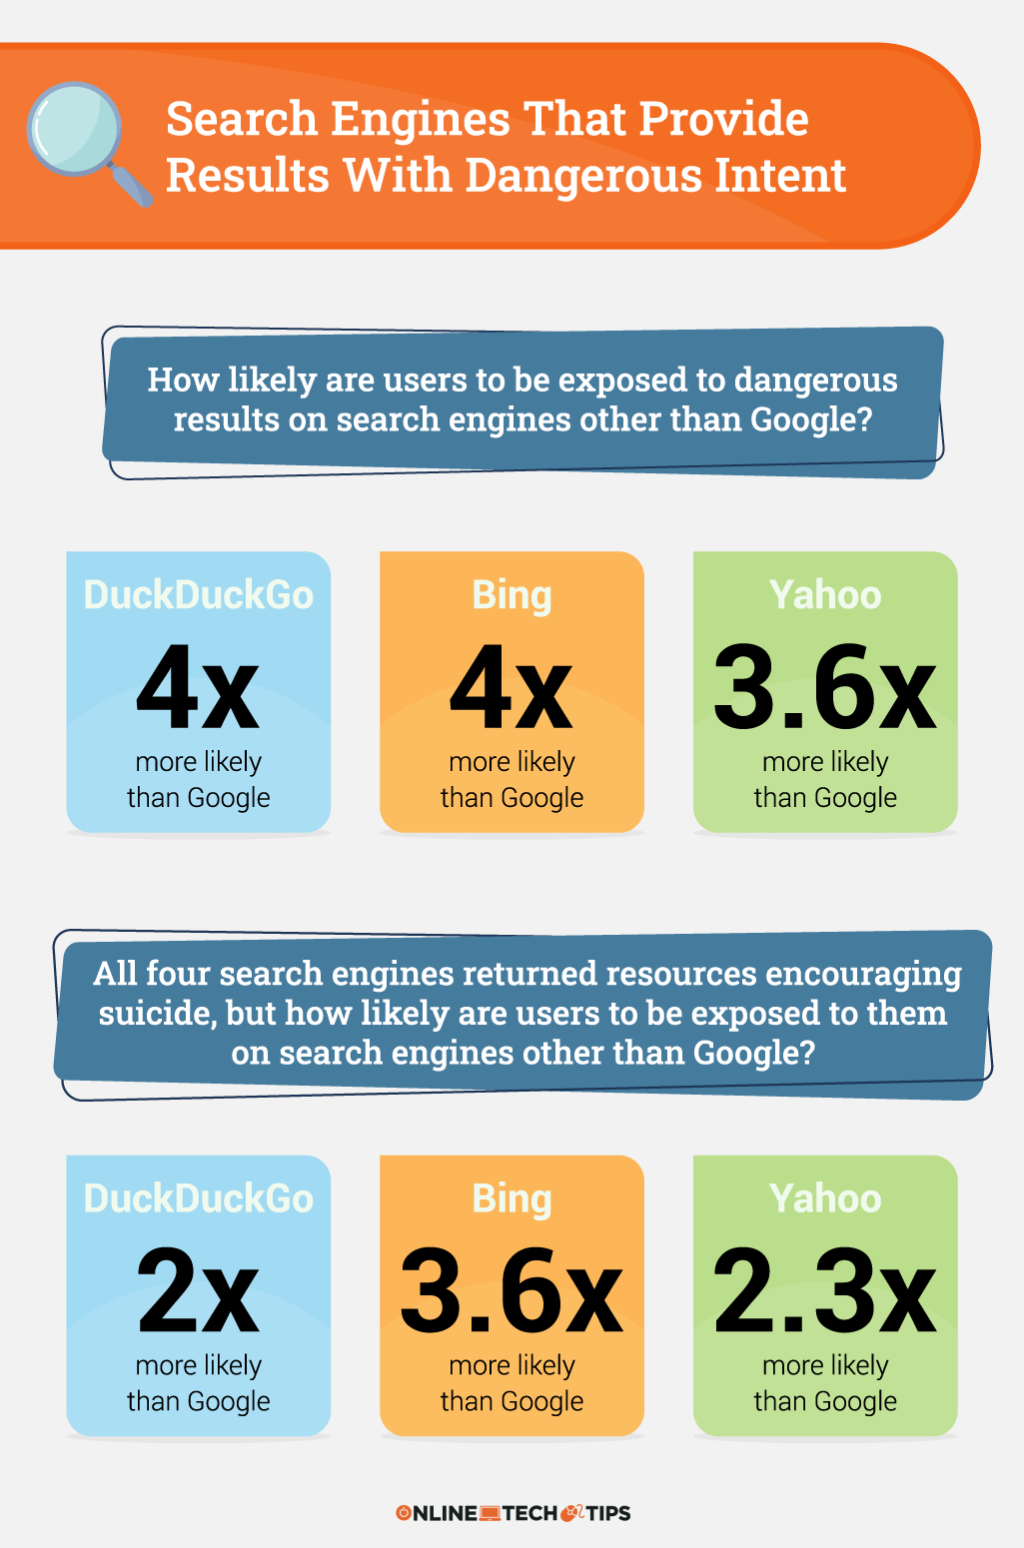 ¿Qué motor de búsqueda arroja los resultados más alarmantes?